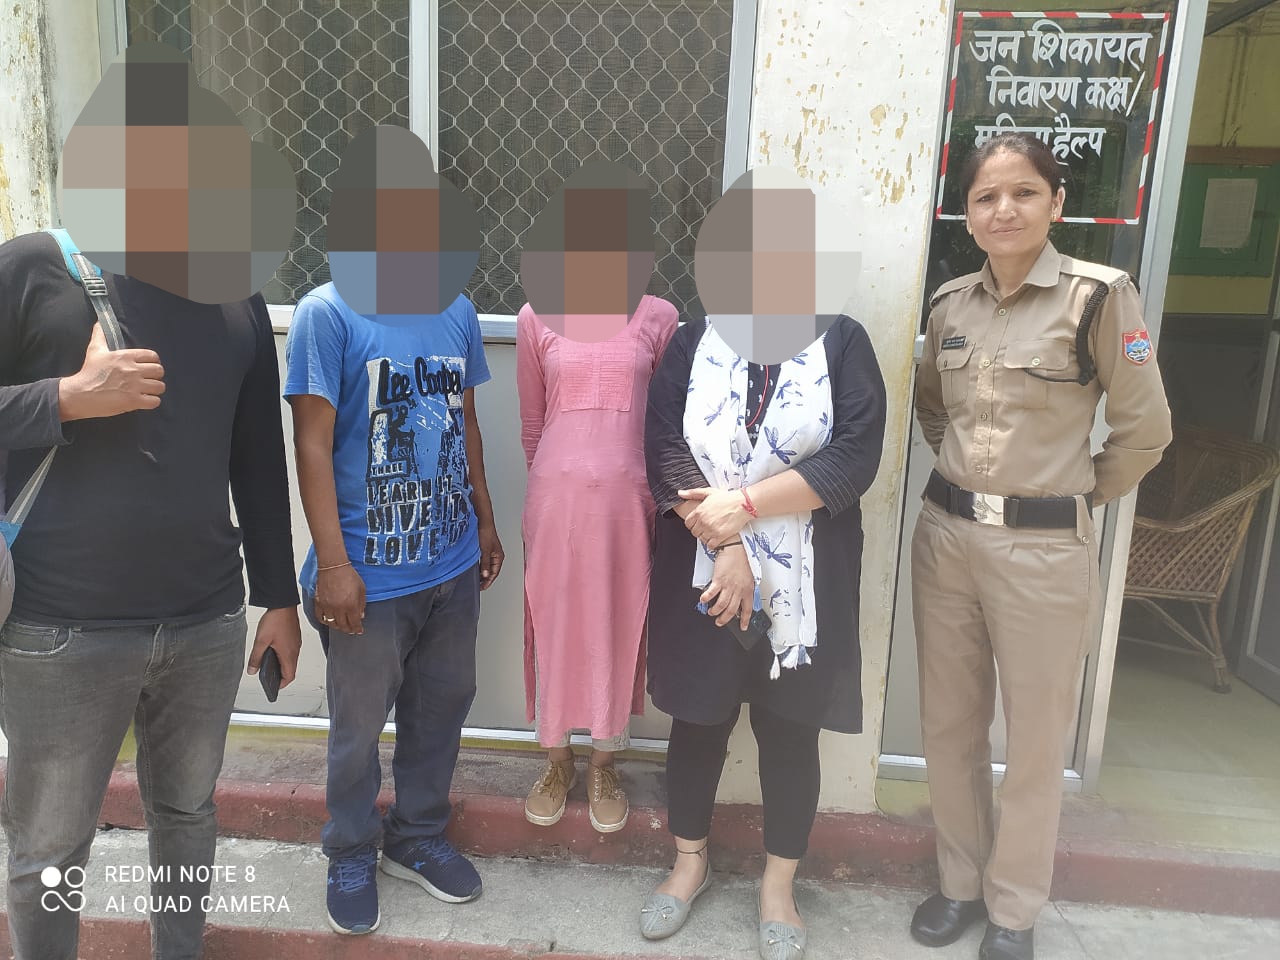 दिल्ली से गुमशुदा बालिका को टनकपुर पुलिस द्वारा टनकपुर क्षेत्र से सकुशल बरामद कर परिजनों के सुपुर्द किया गया